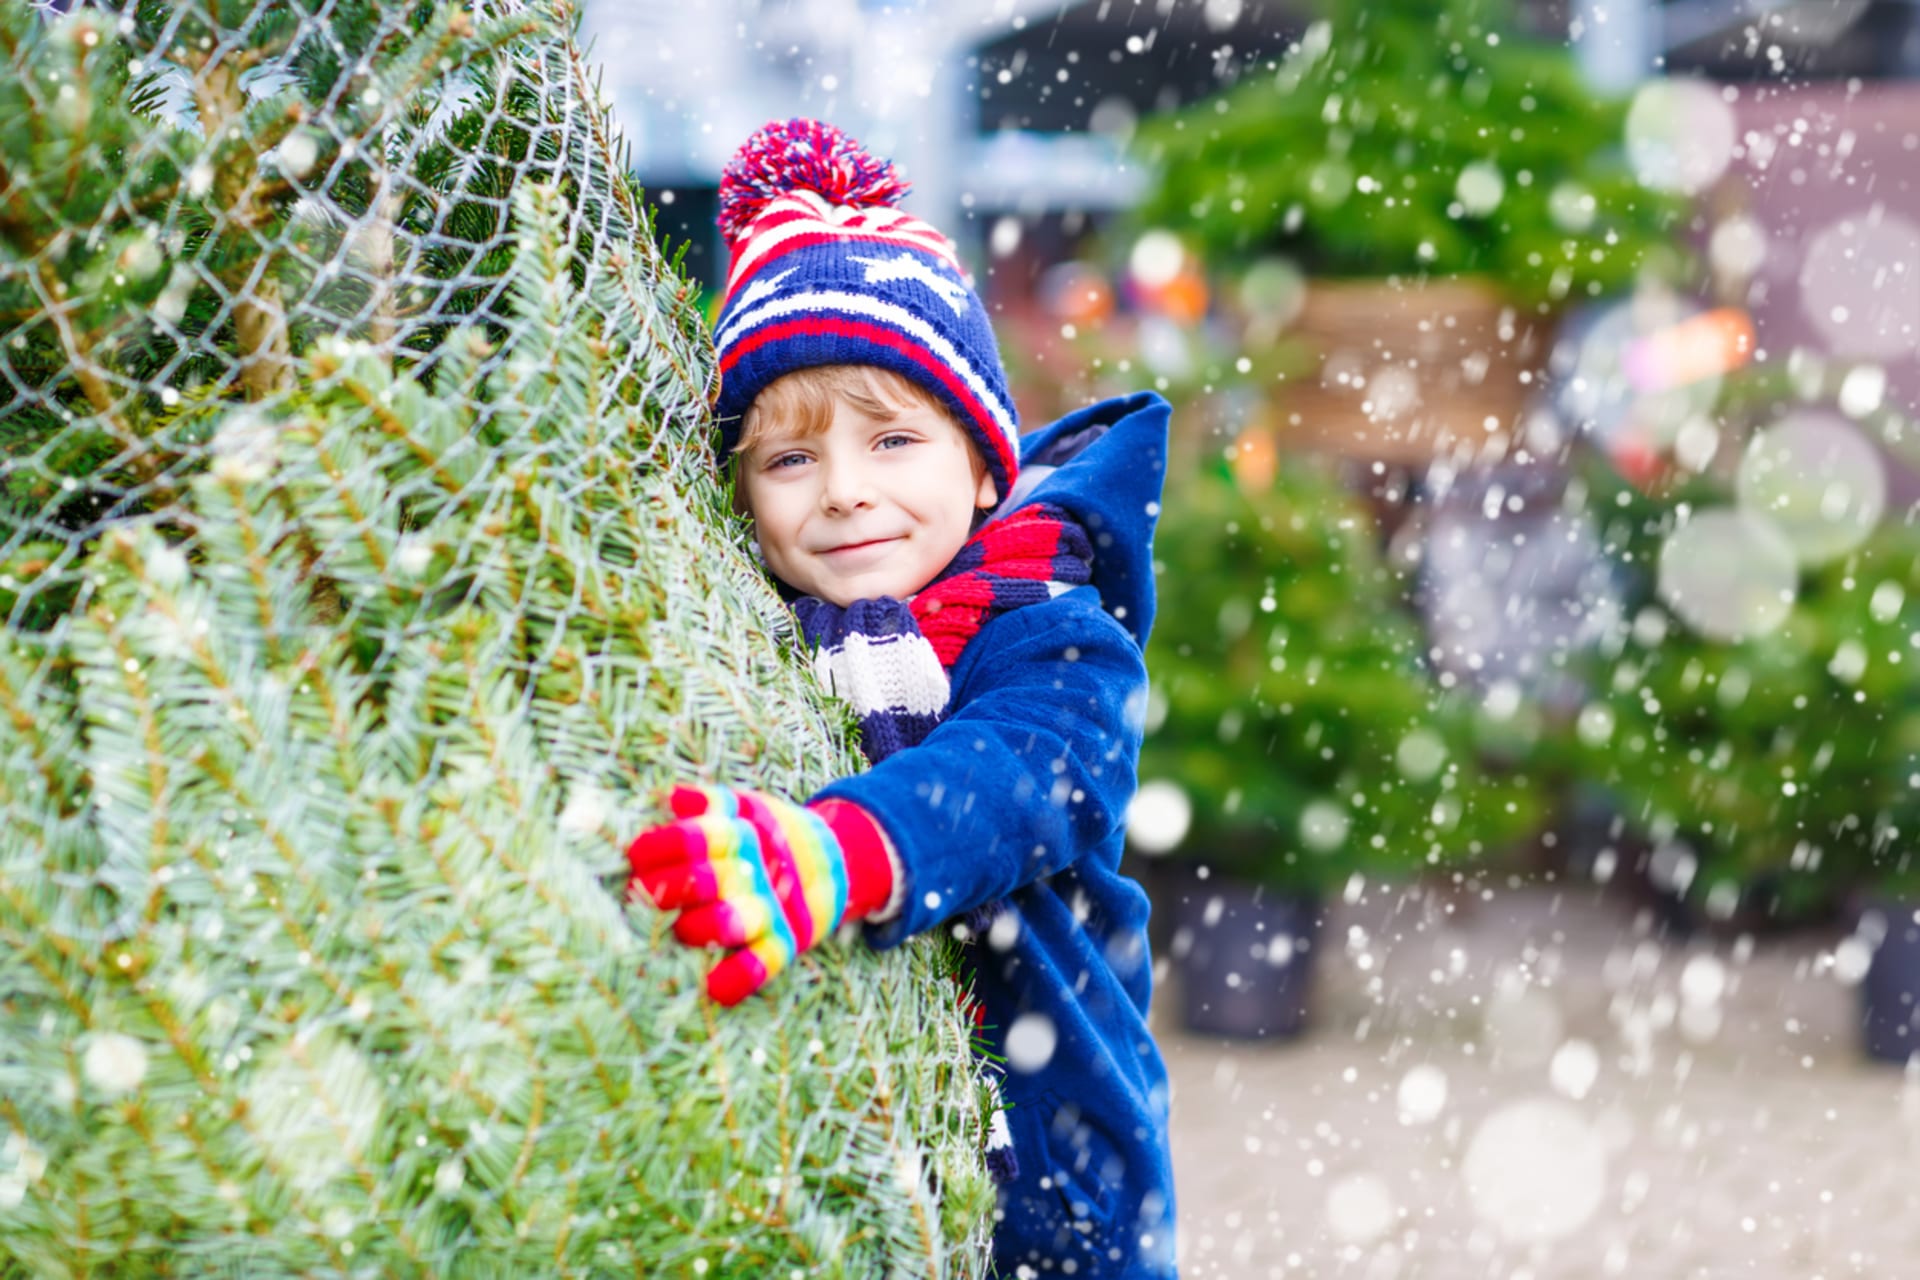 Vánoce máme často spojené se svým vlastním dětstvím. Propadnout vzpomínkám až přespříliš však může být ošidné.